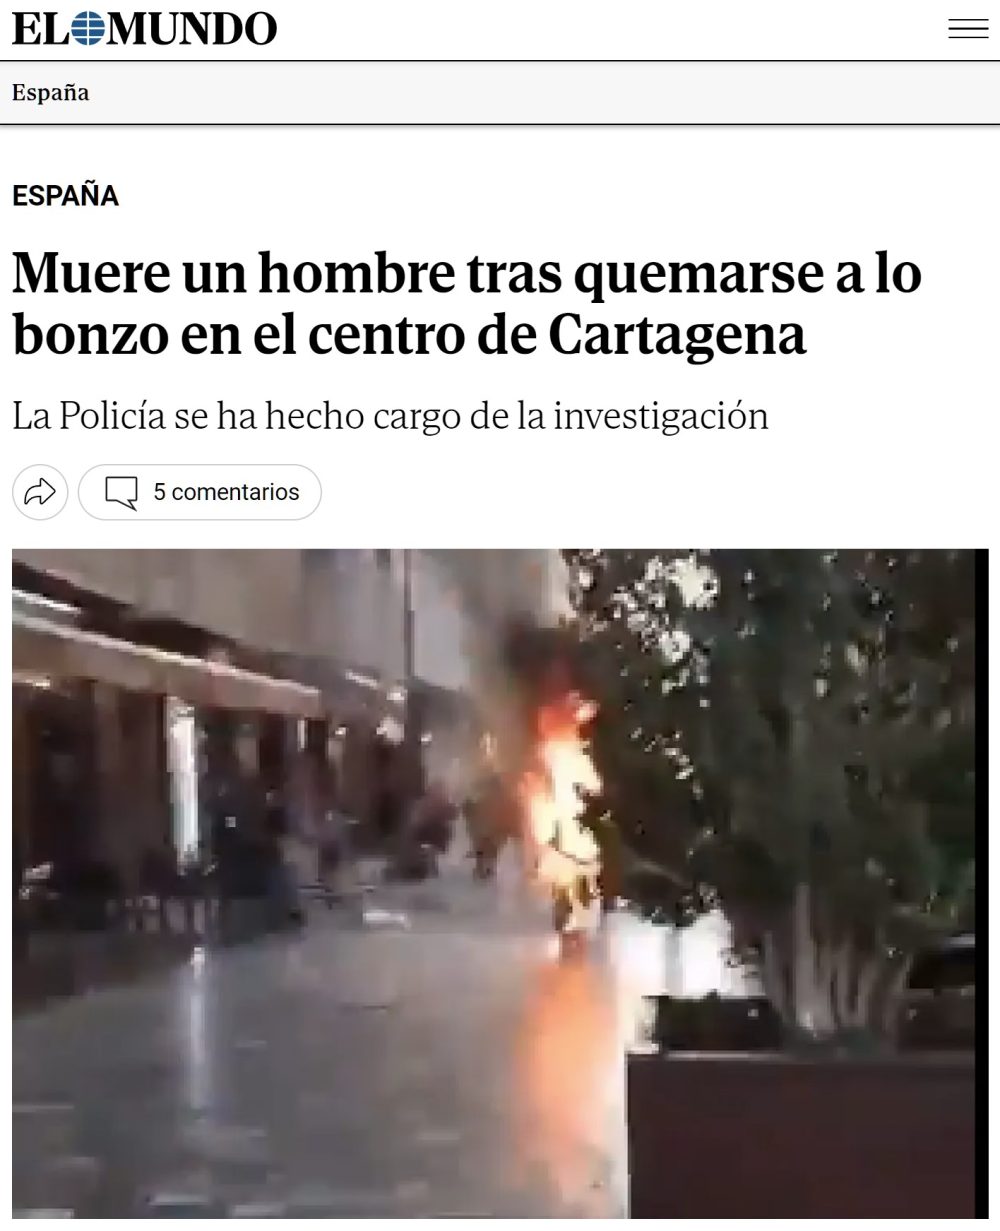 Muere un hombre tras quemarse a lo bonzo en Cartagena